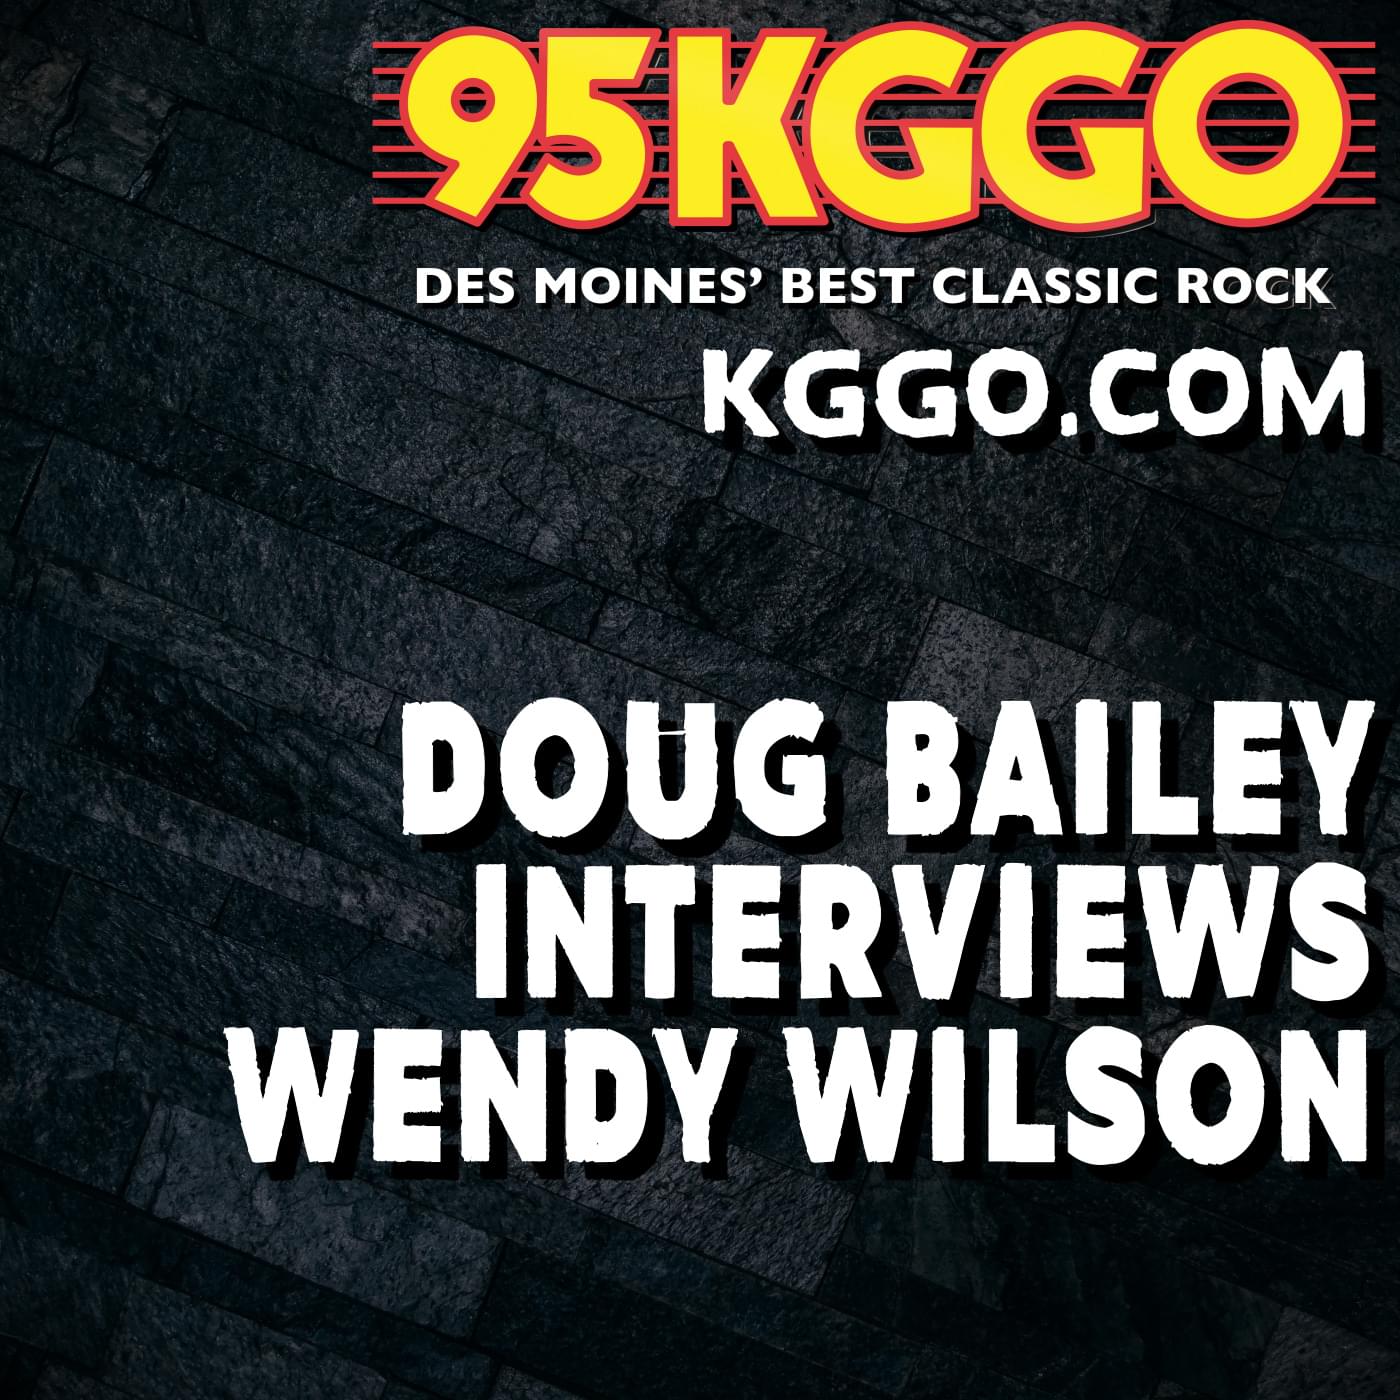 Wendy Wilson Interview